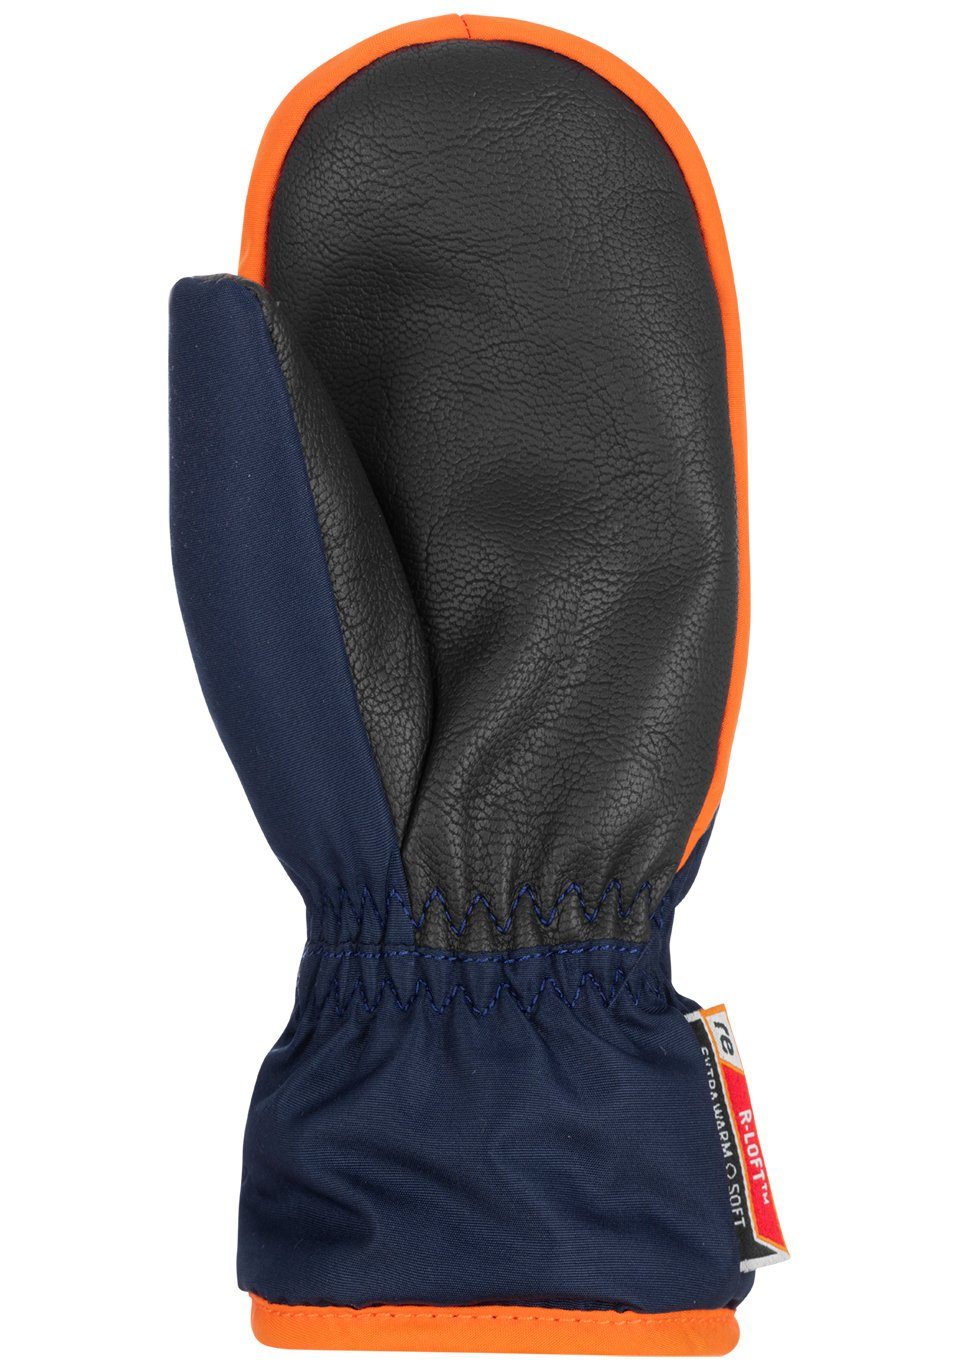 Reusch Fäustlinge Ben Mitten mit Reißverschluss praktischem orange-blau